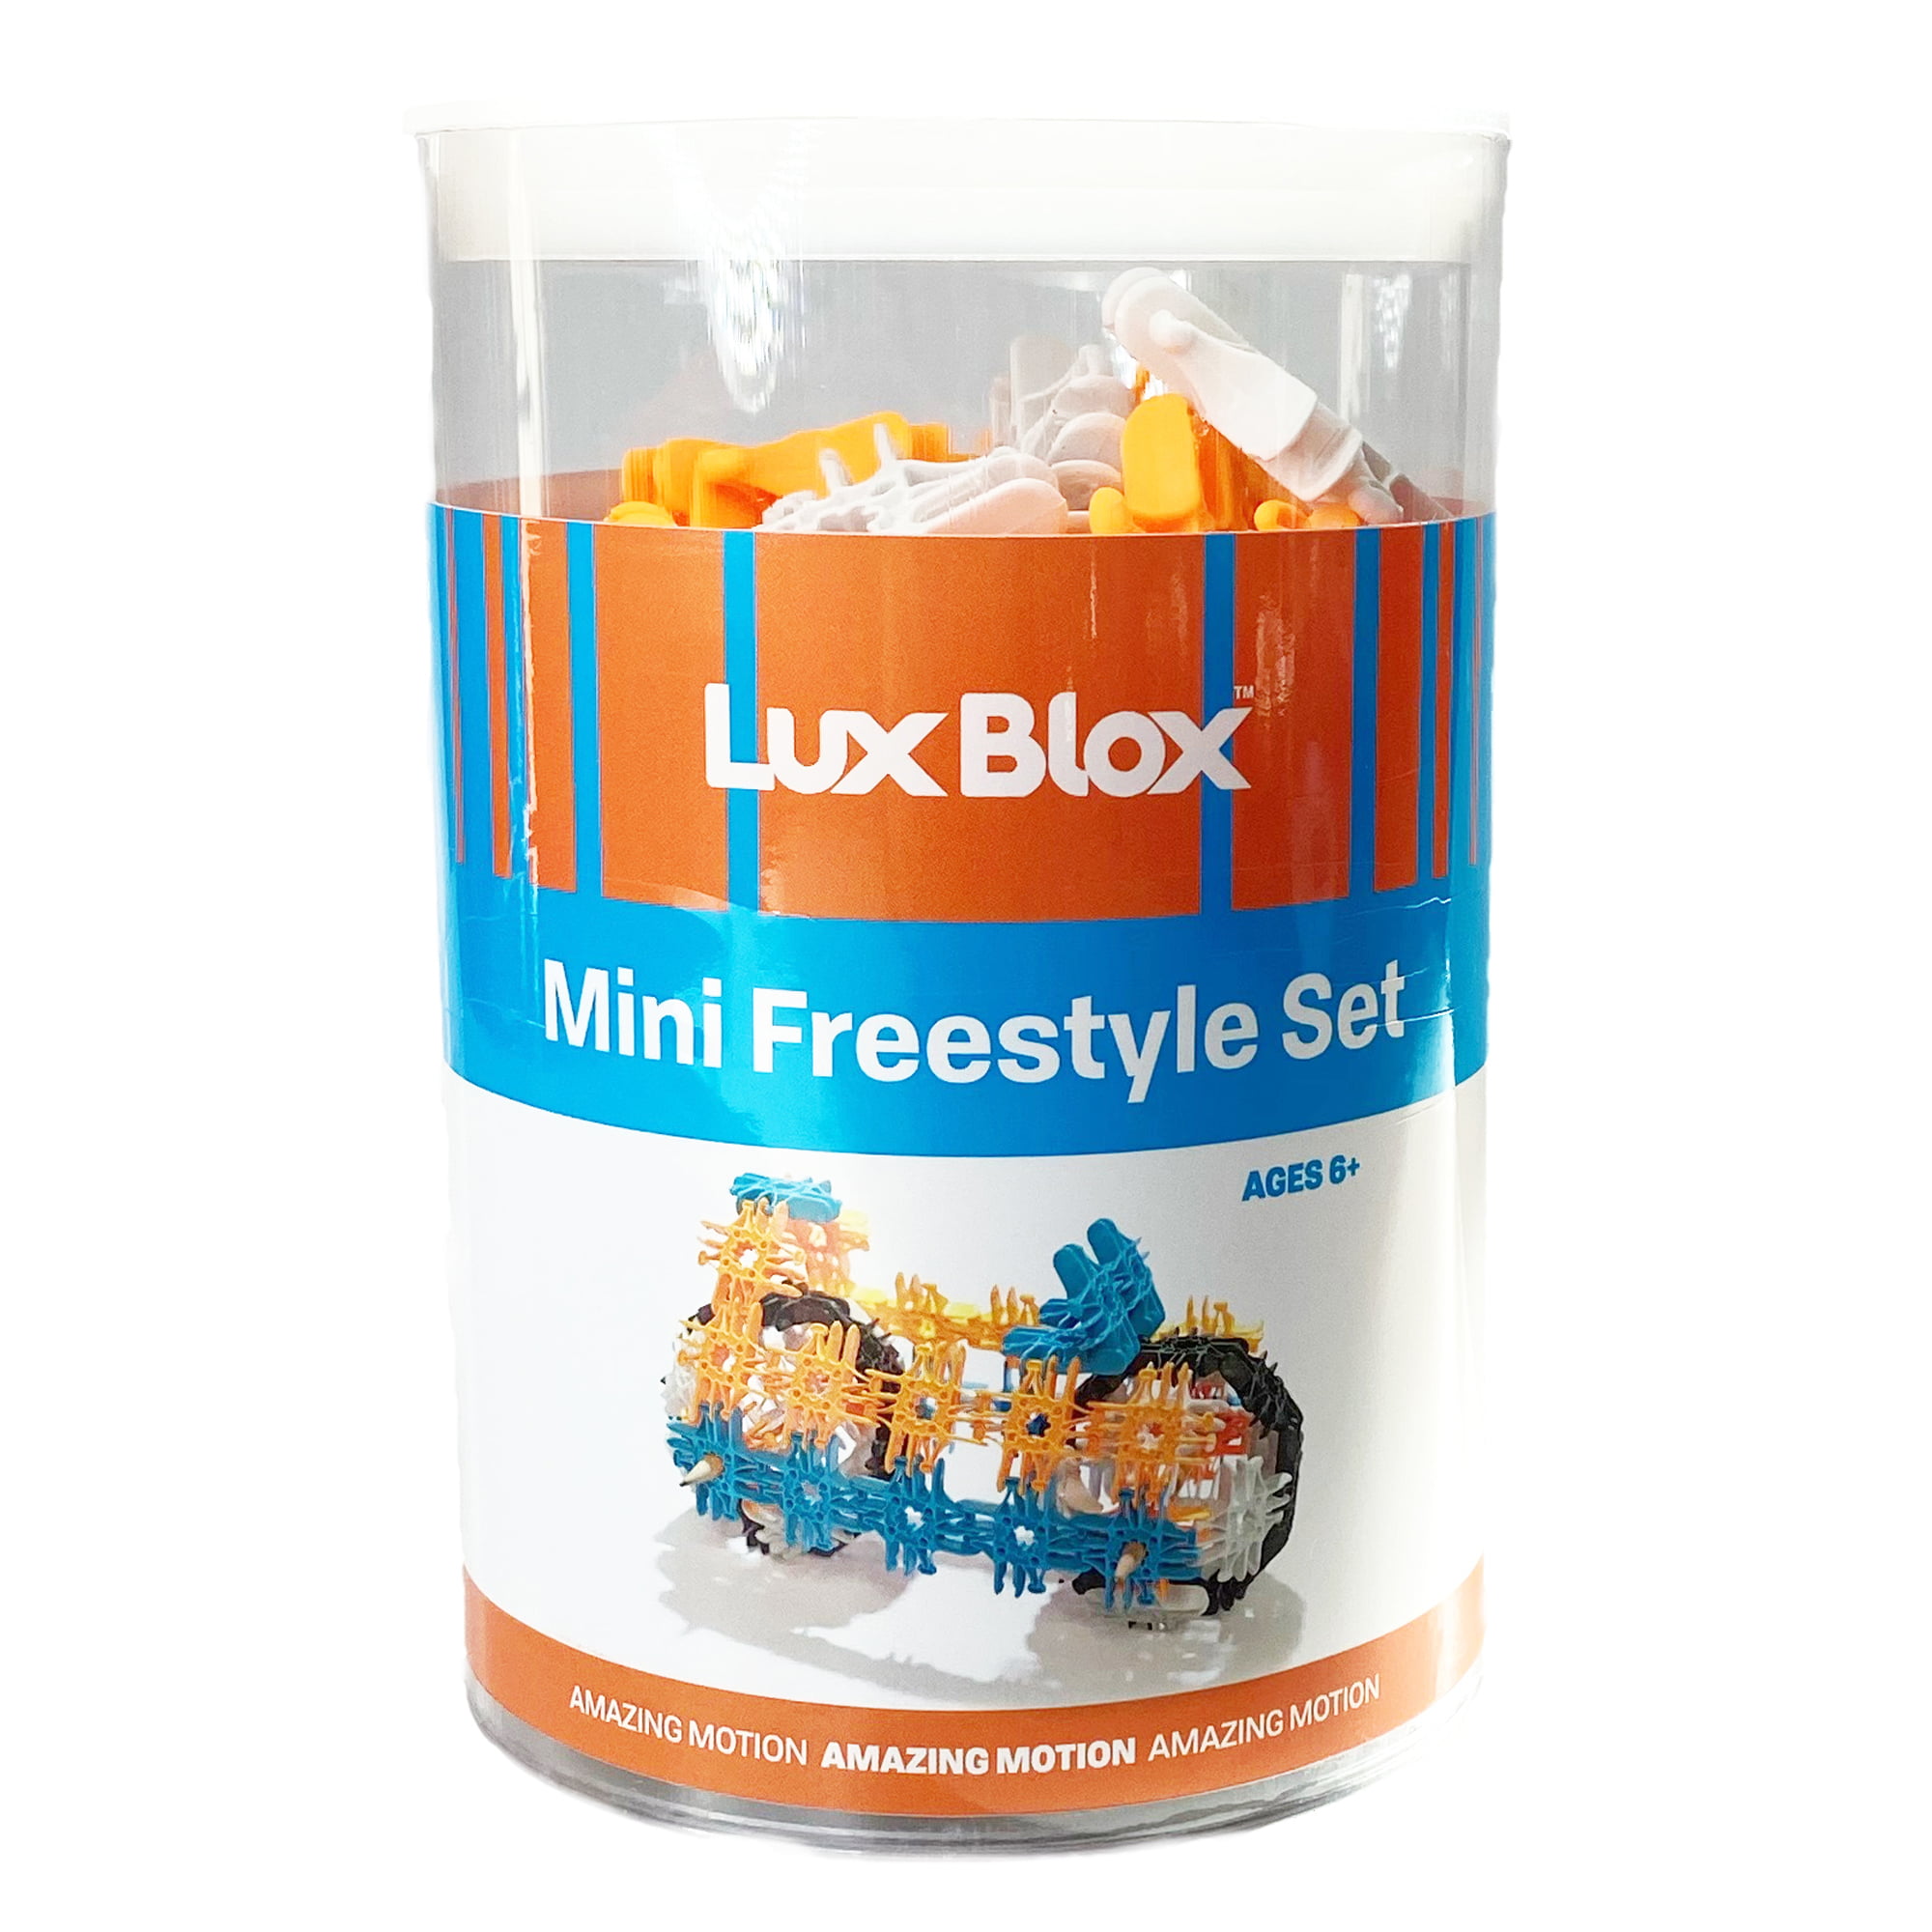 Flexible and Versatile Construction Blocks 30 Pieces Lux Blox Grey and Olive Fidget Flexer Set